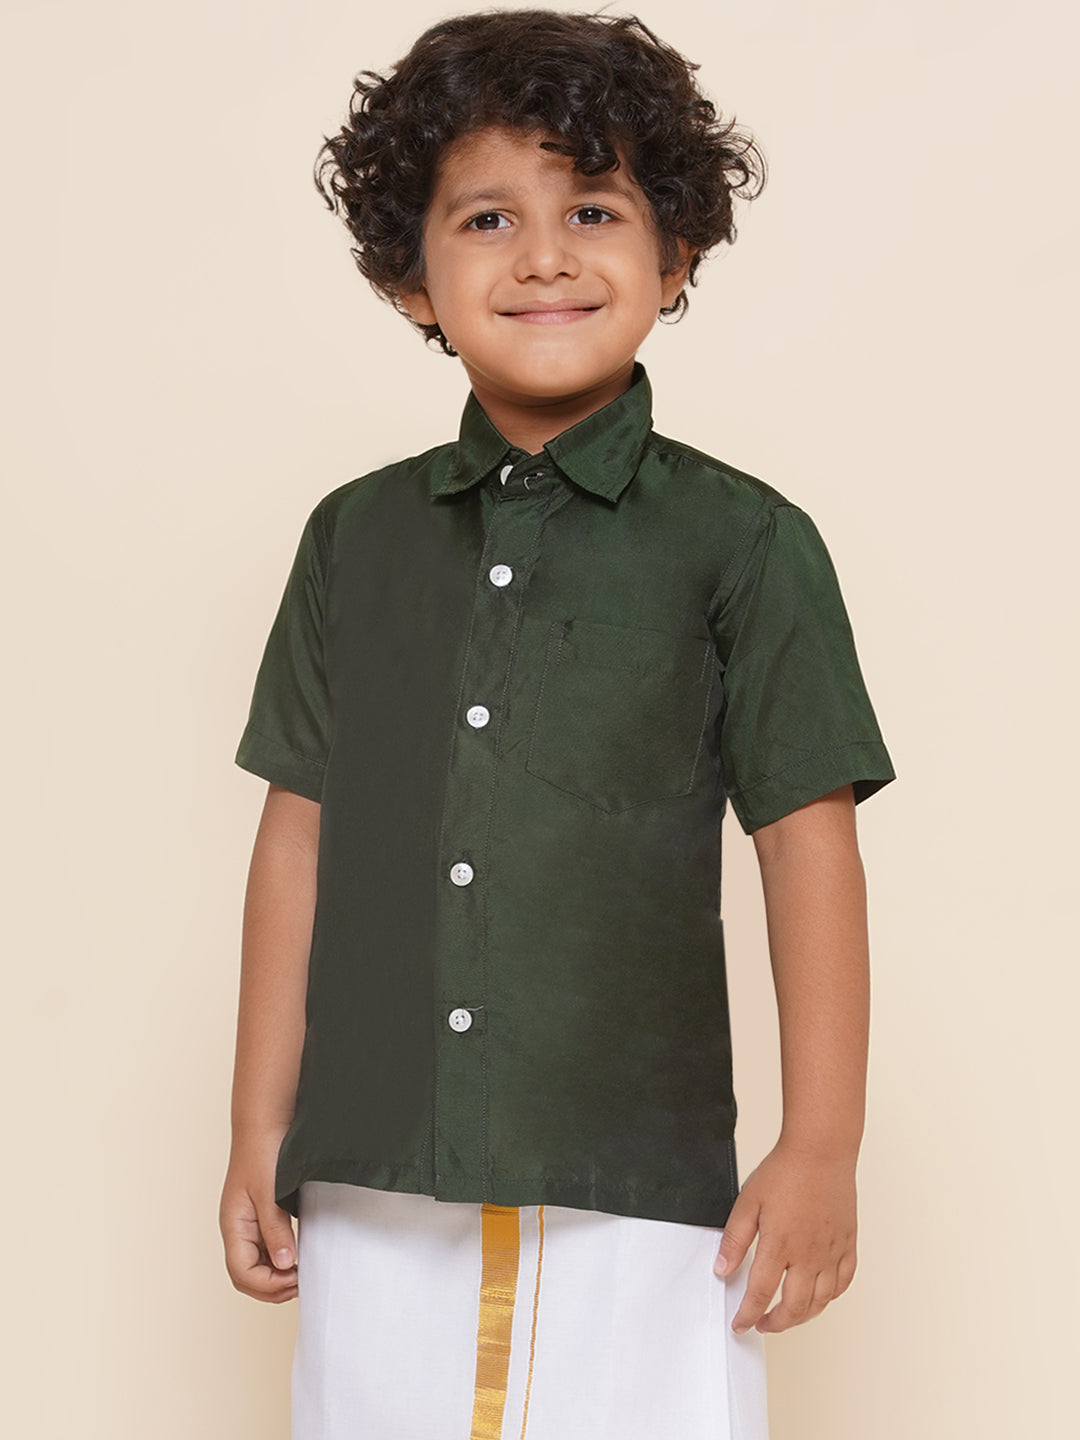 Boys Green Colour Polyester Shirt